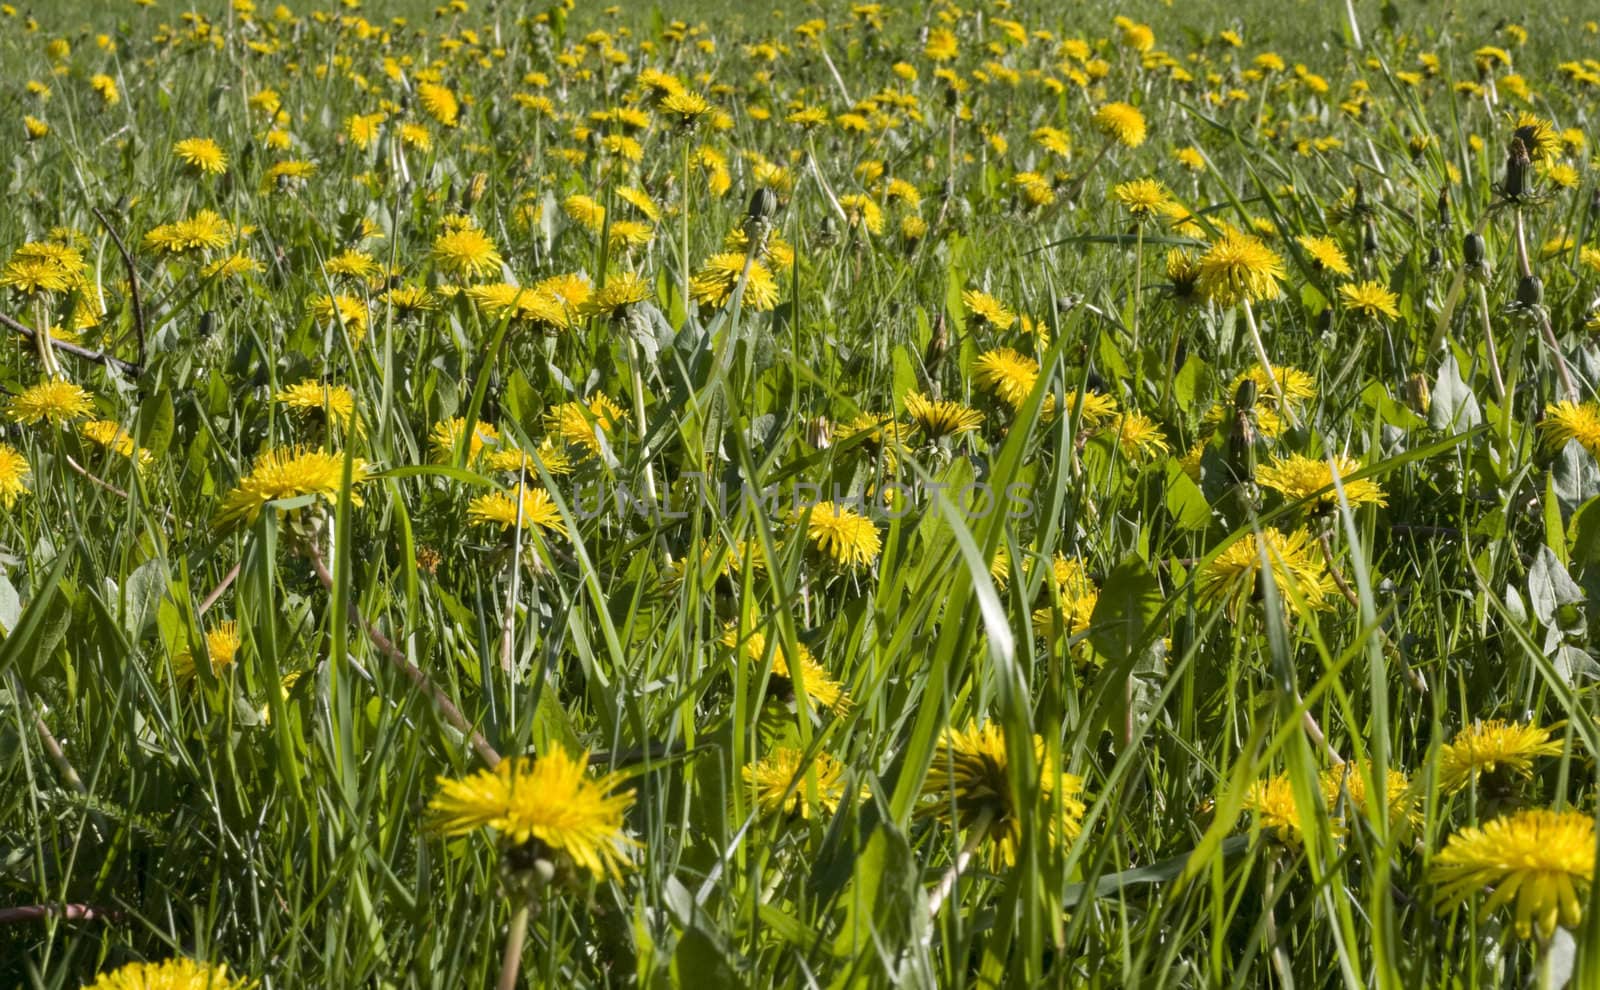 Dandelion field by ursolv